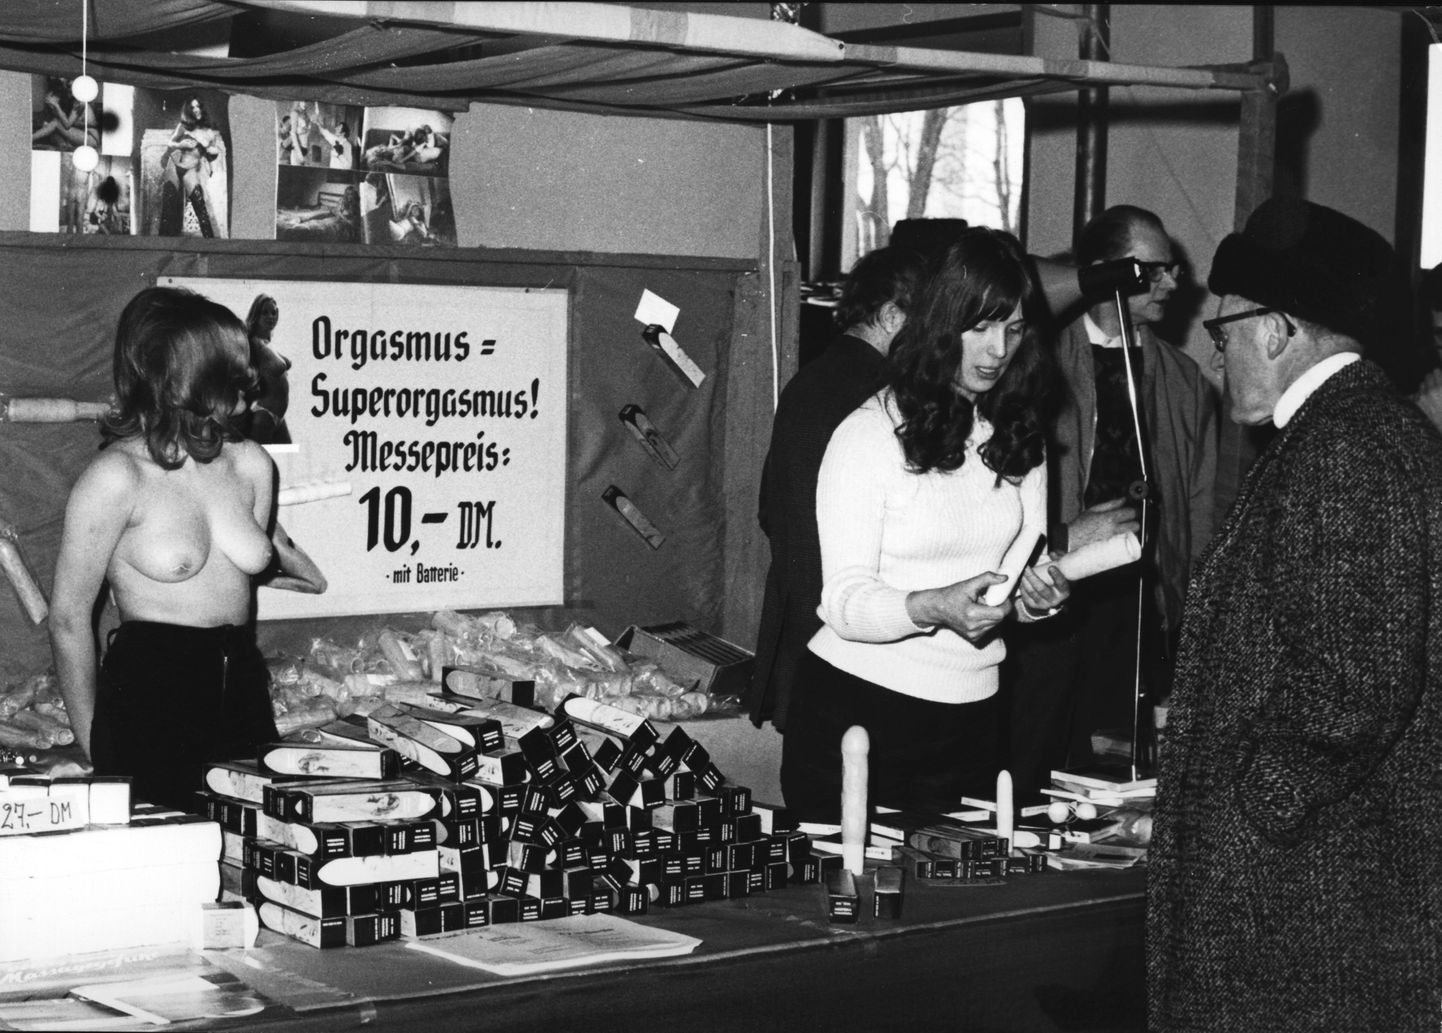 Berliini seksimess 1971. Superorgasm vaid 10 marka.